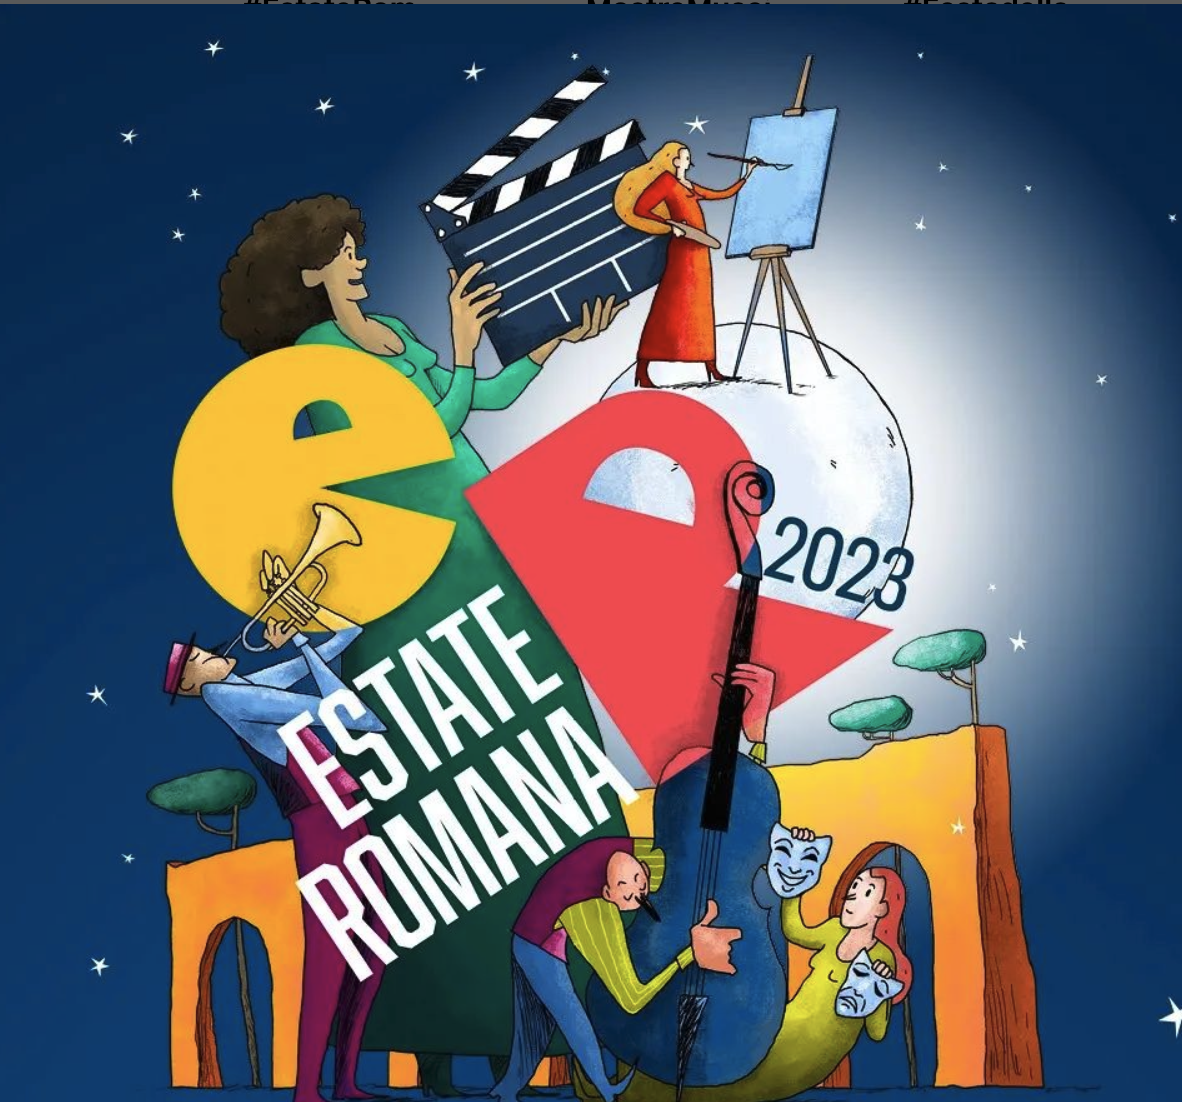 Estate Romana 2023 tra cinema, teatro, musica, danza e arte